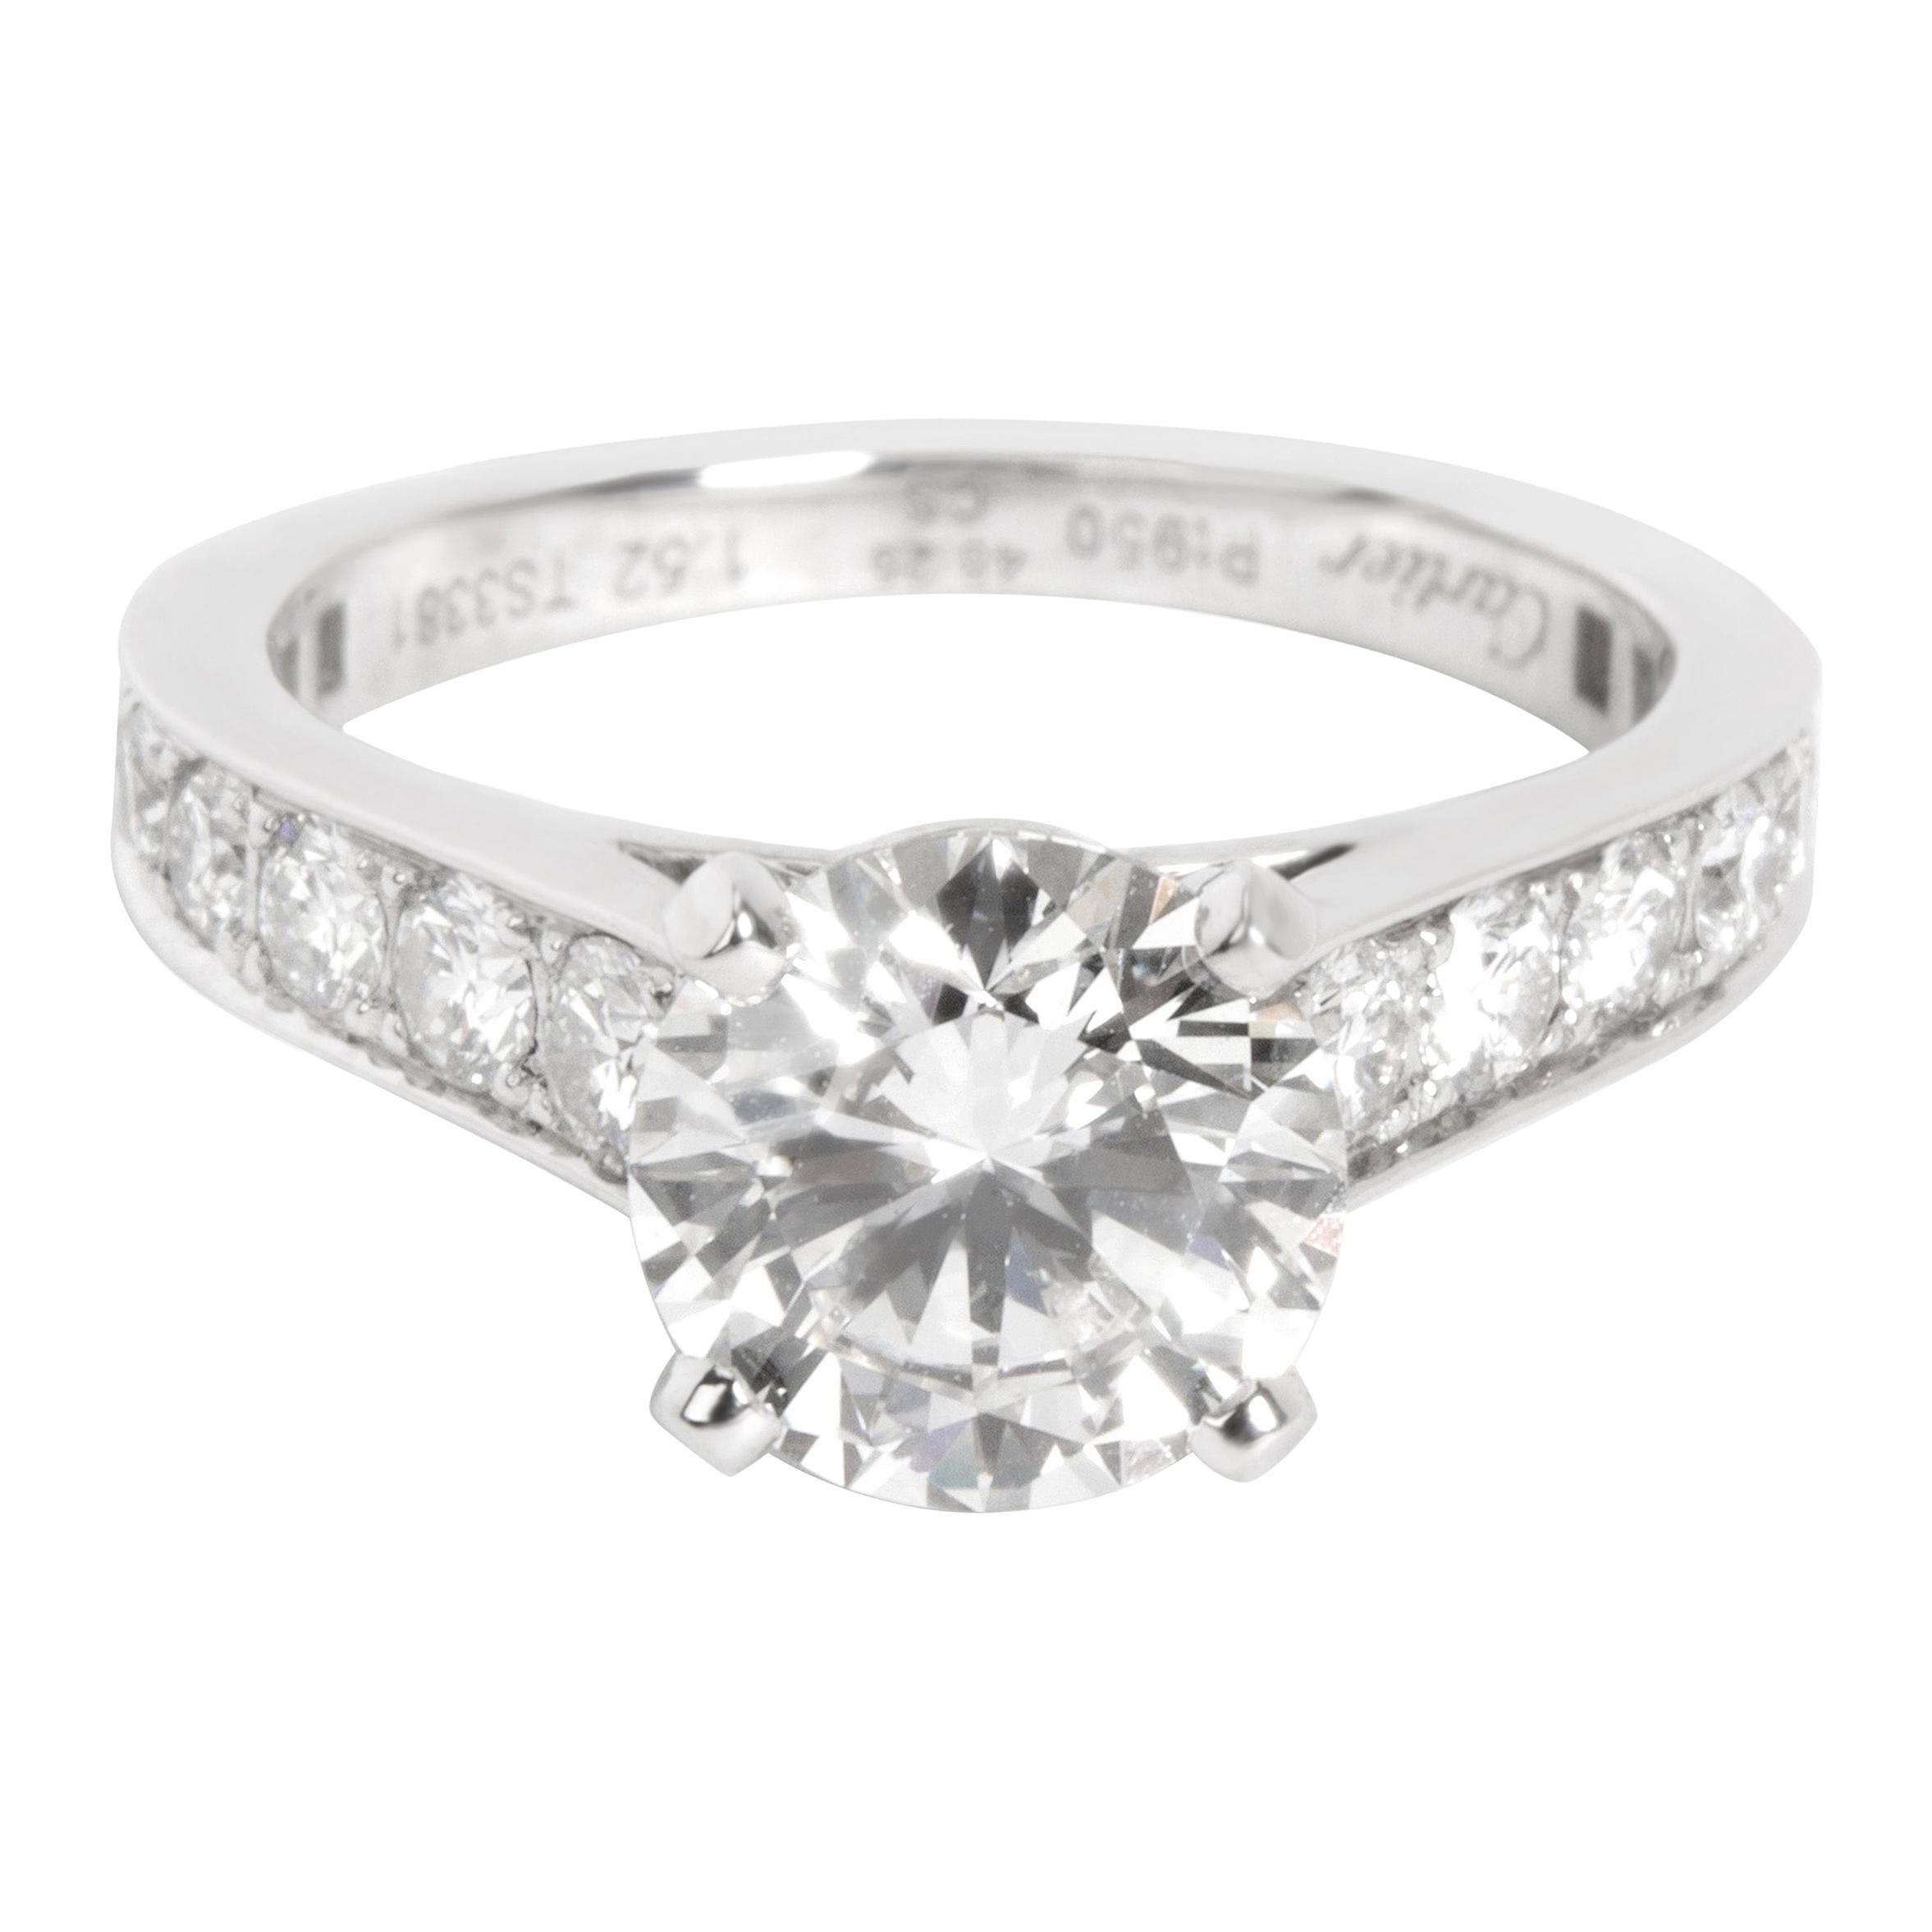 Cartier Solitaire Diamond Engagement Ring in Platinum G VS1 2.10 Carat